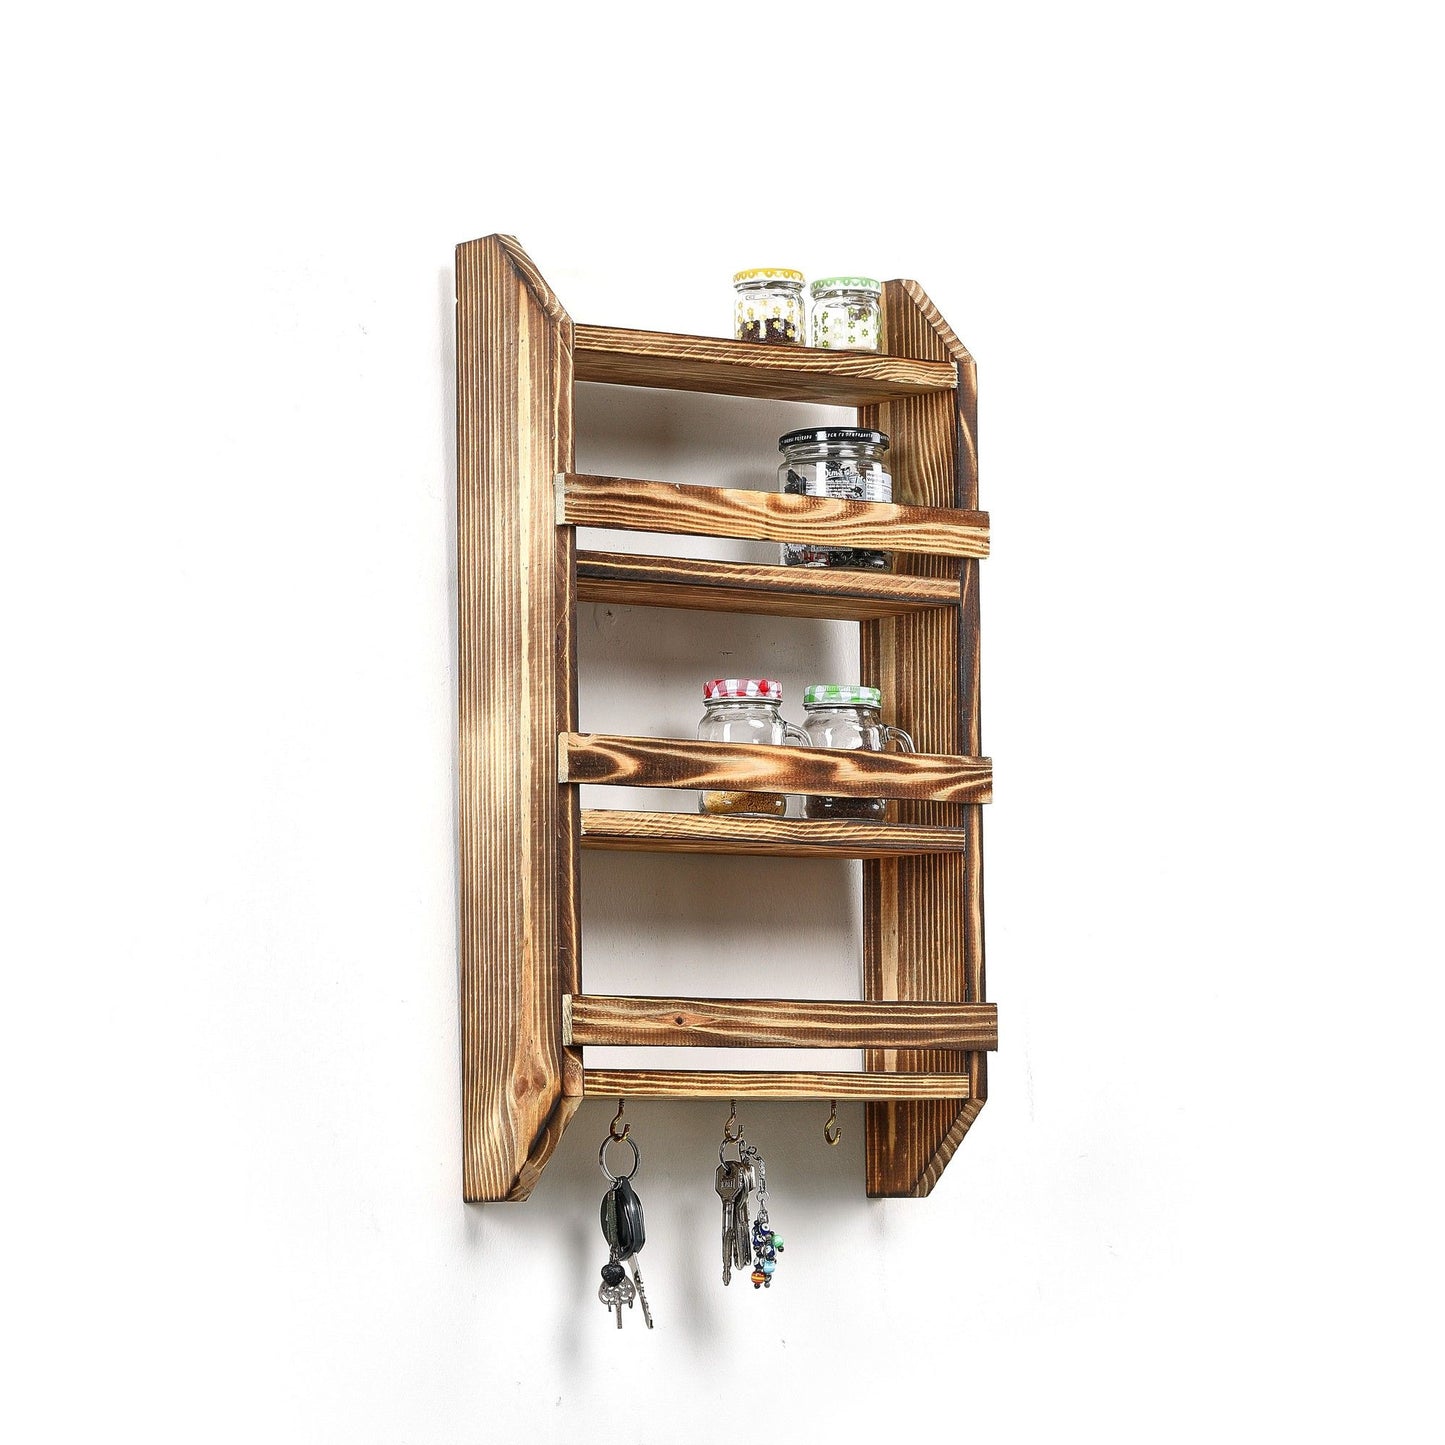 Shelf Hook - Wooden Shelf